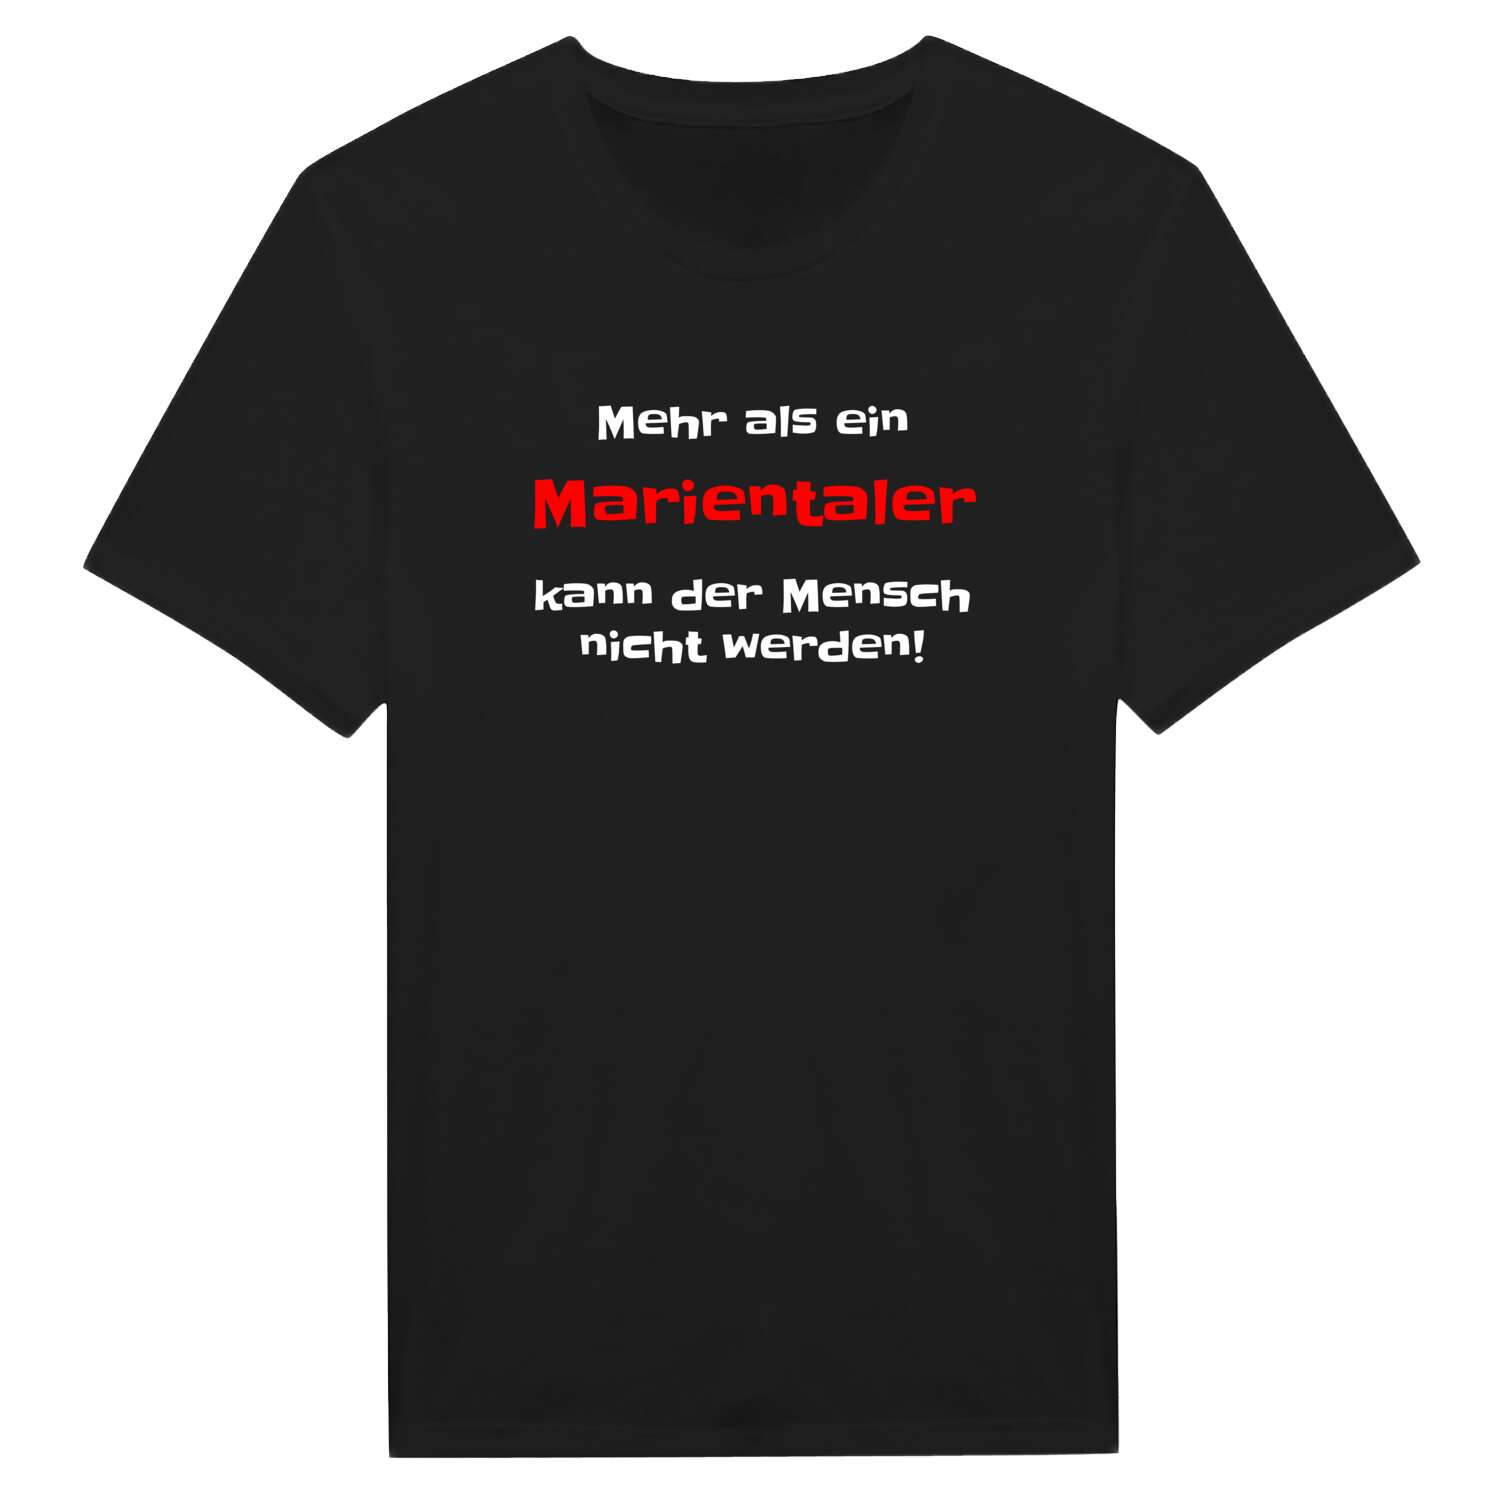 Mariental T-Shirt »Mehr als ein«